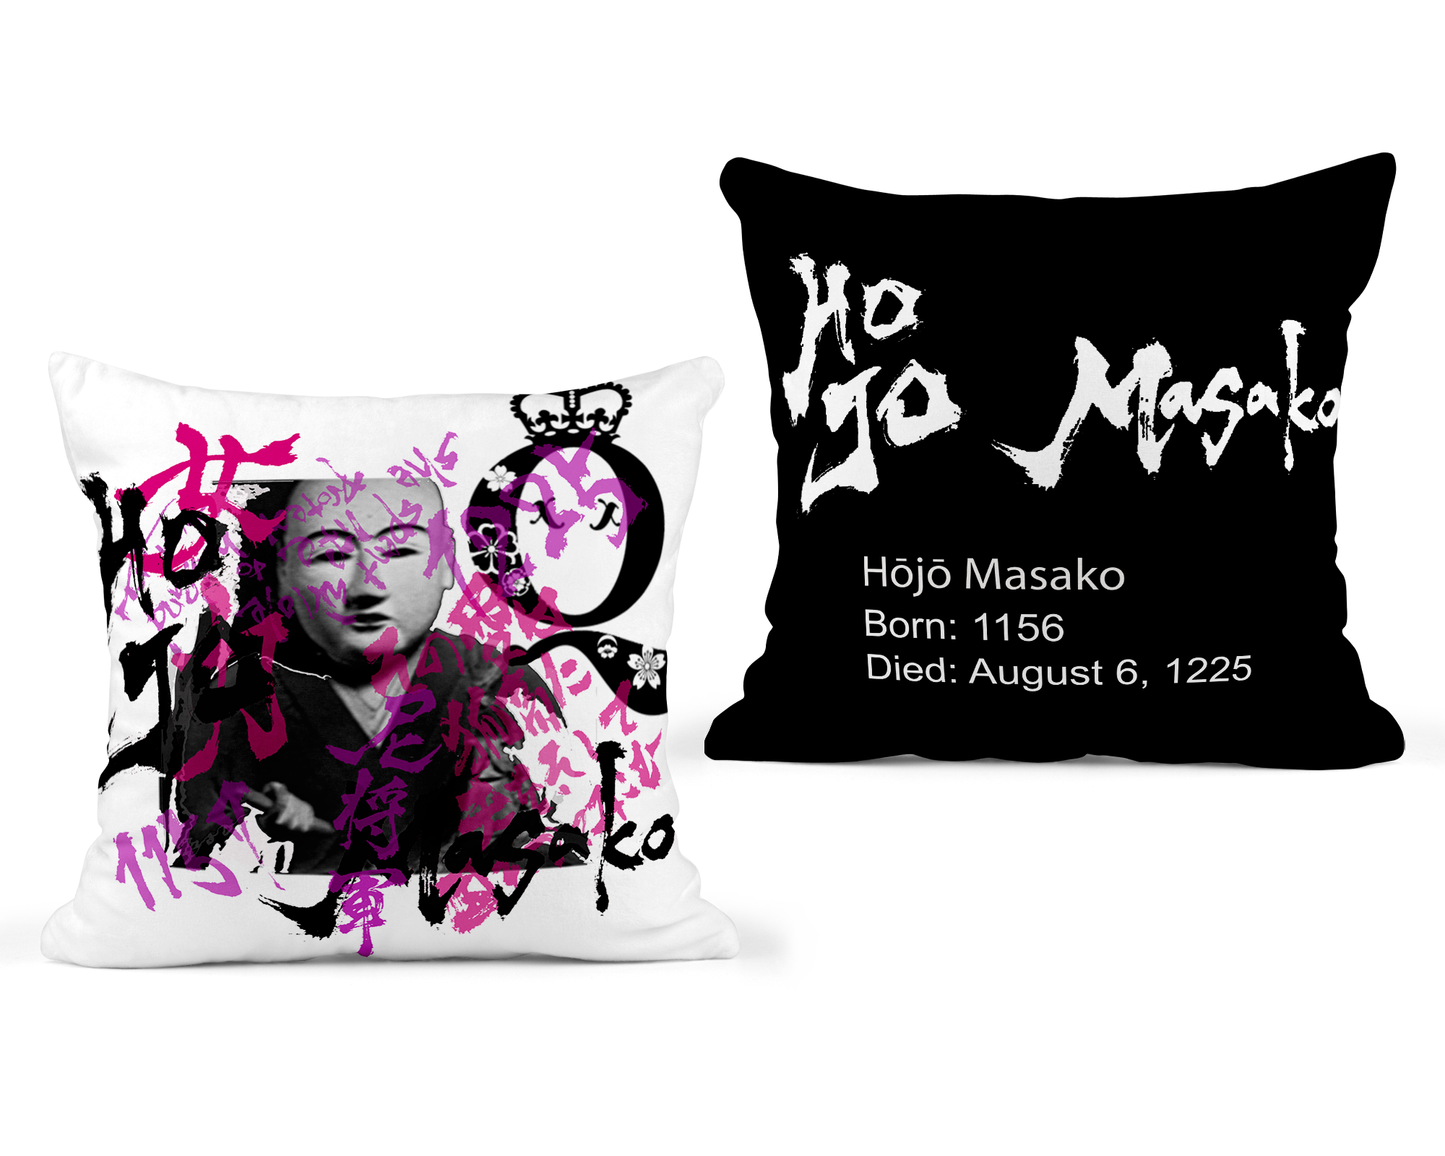 Hojo Masako Pillow Cover - Black Back - 22x22